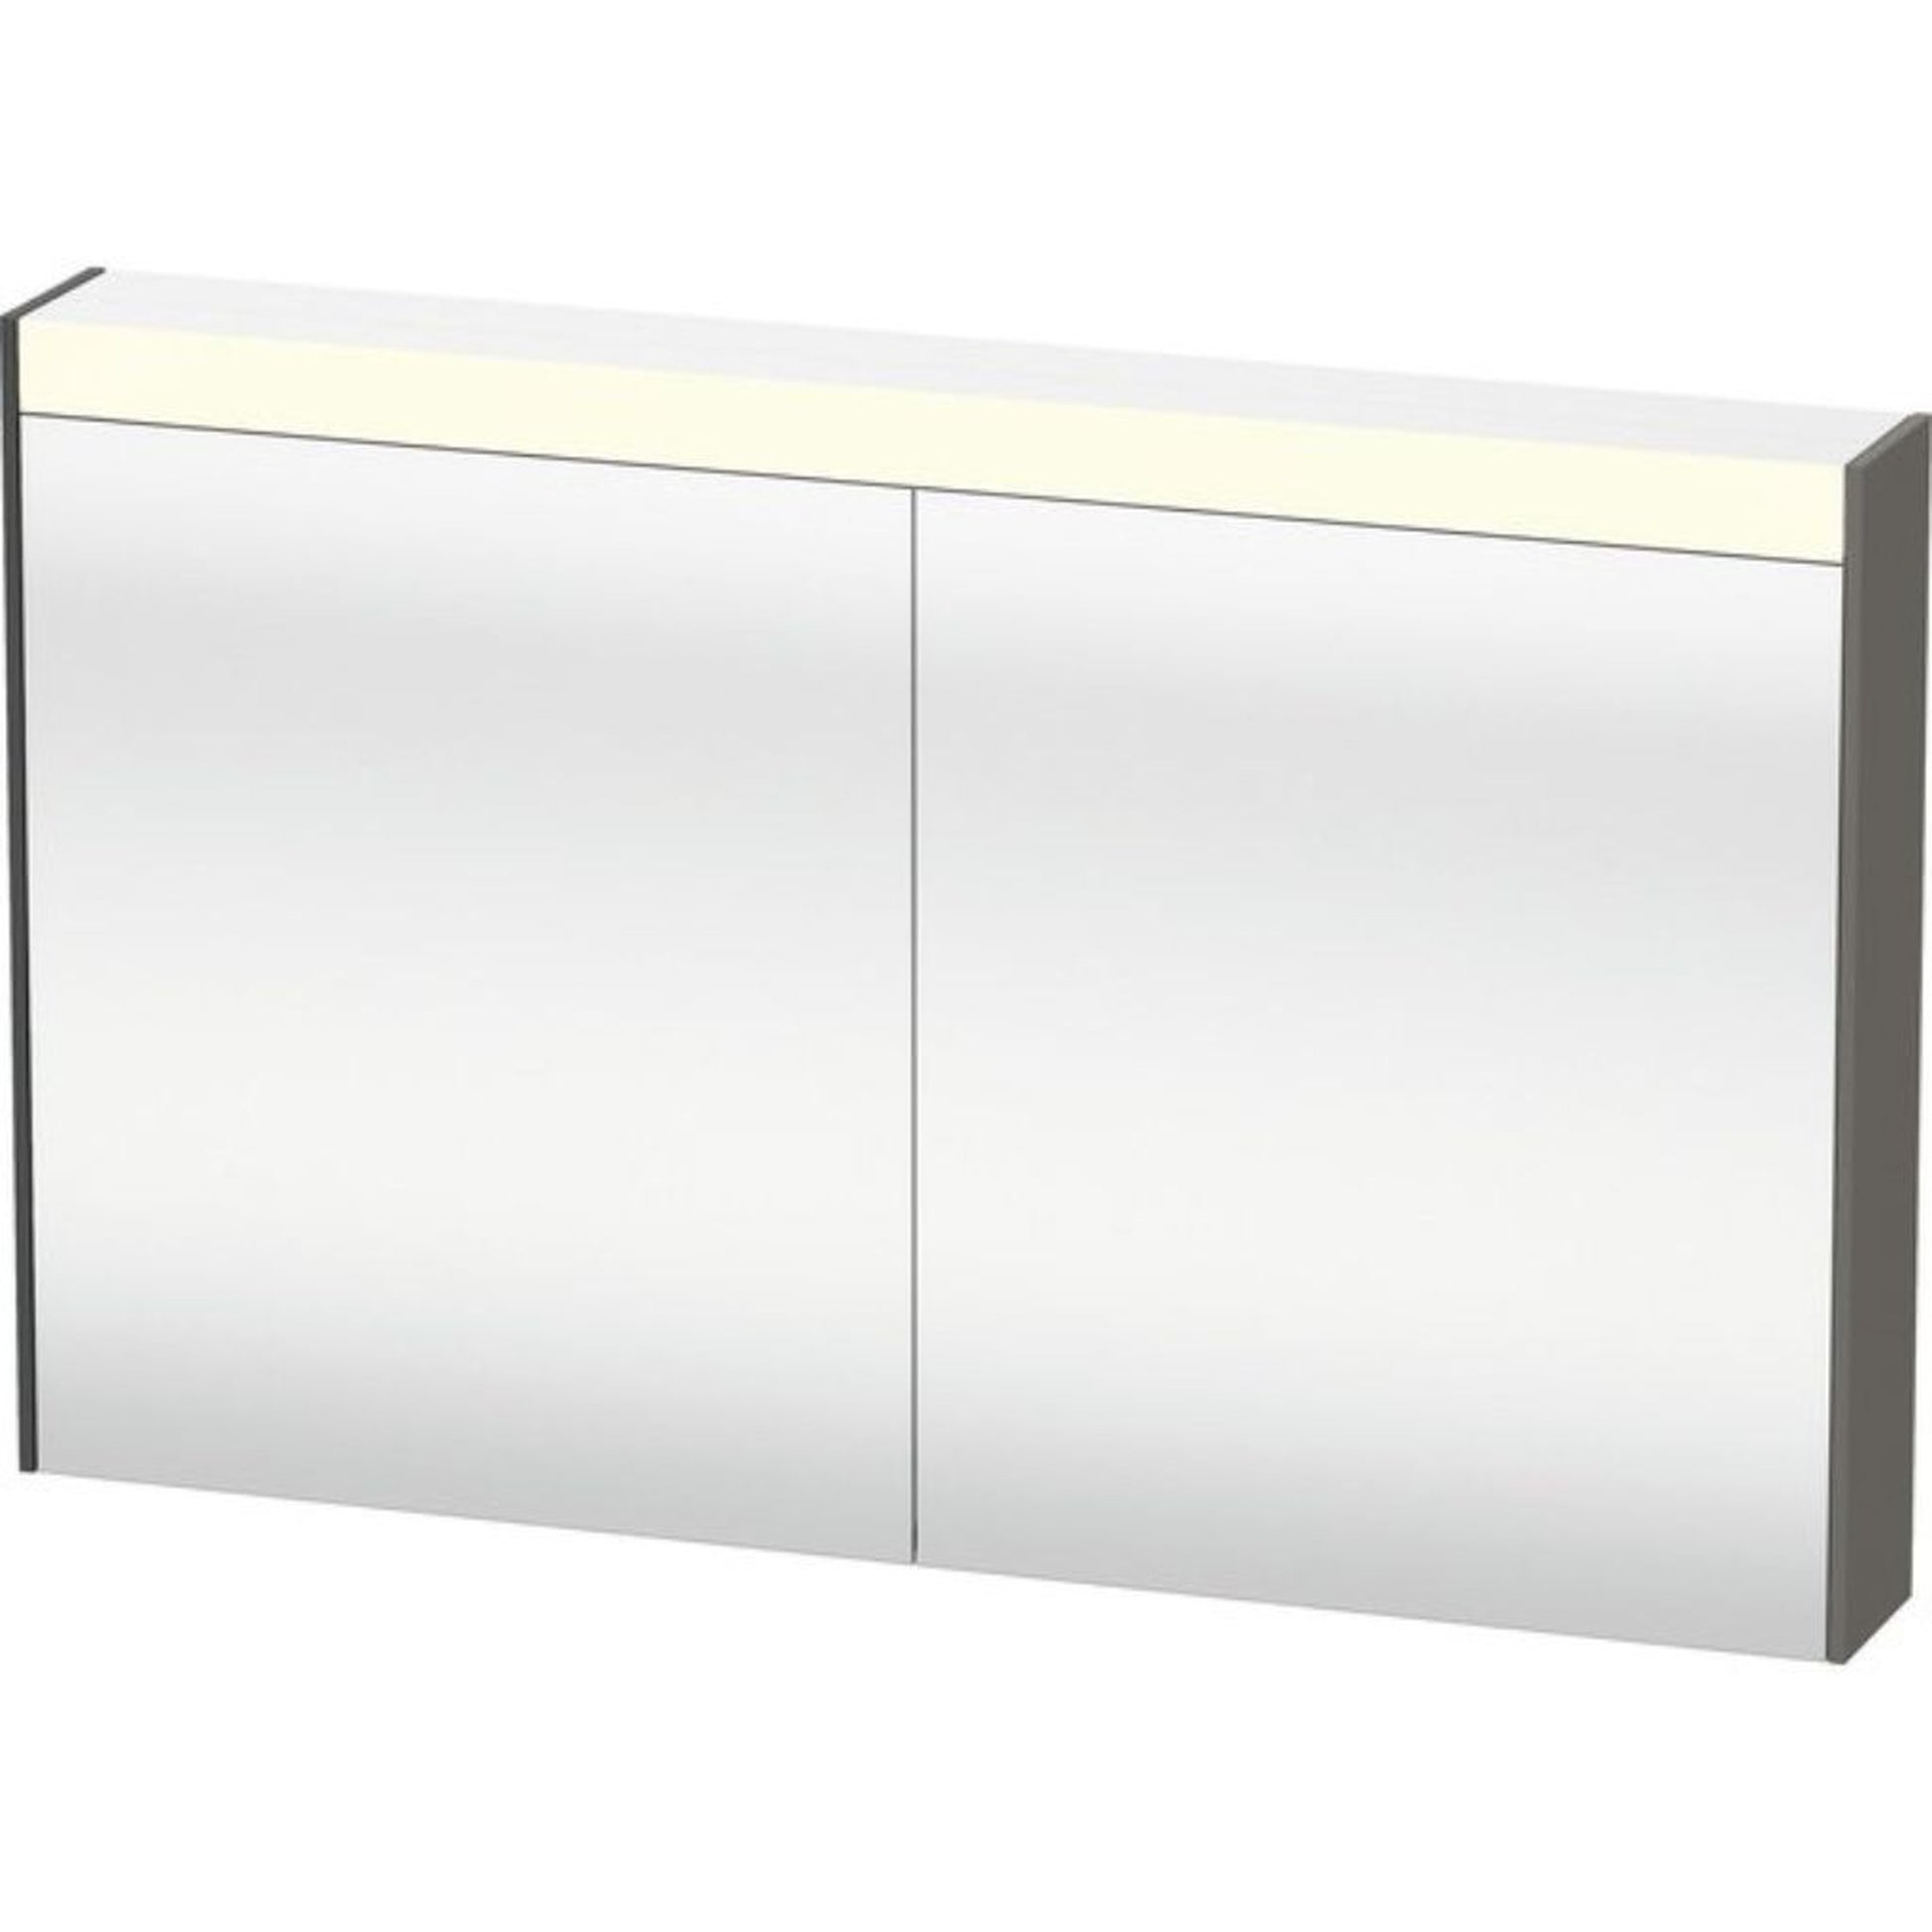 Duravit Brioso 40" x 30" x 6" Mirror Cabinet With Lighting Graphite Matt